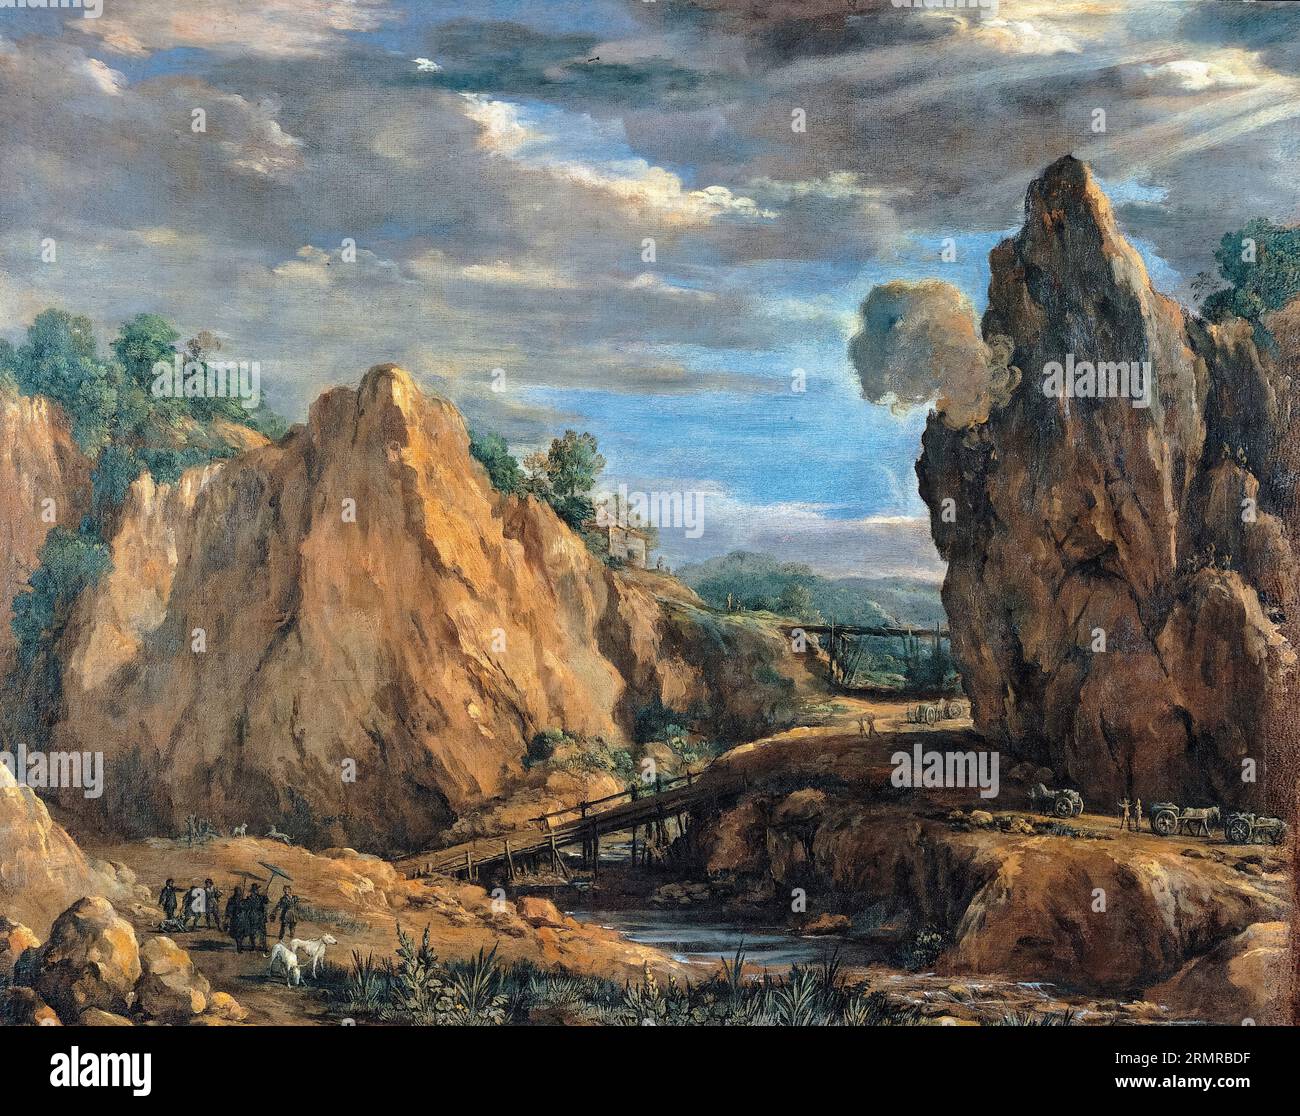 Pietro da Cortona, The allume mines of Tolfa, landscape painting in oil on canvas, 1630-1640 Stock Photo